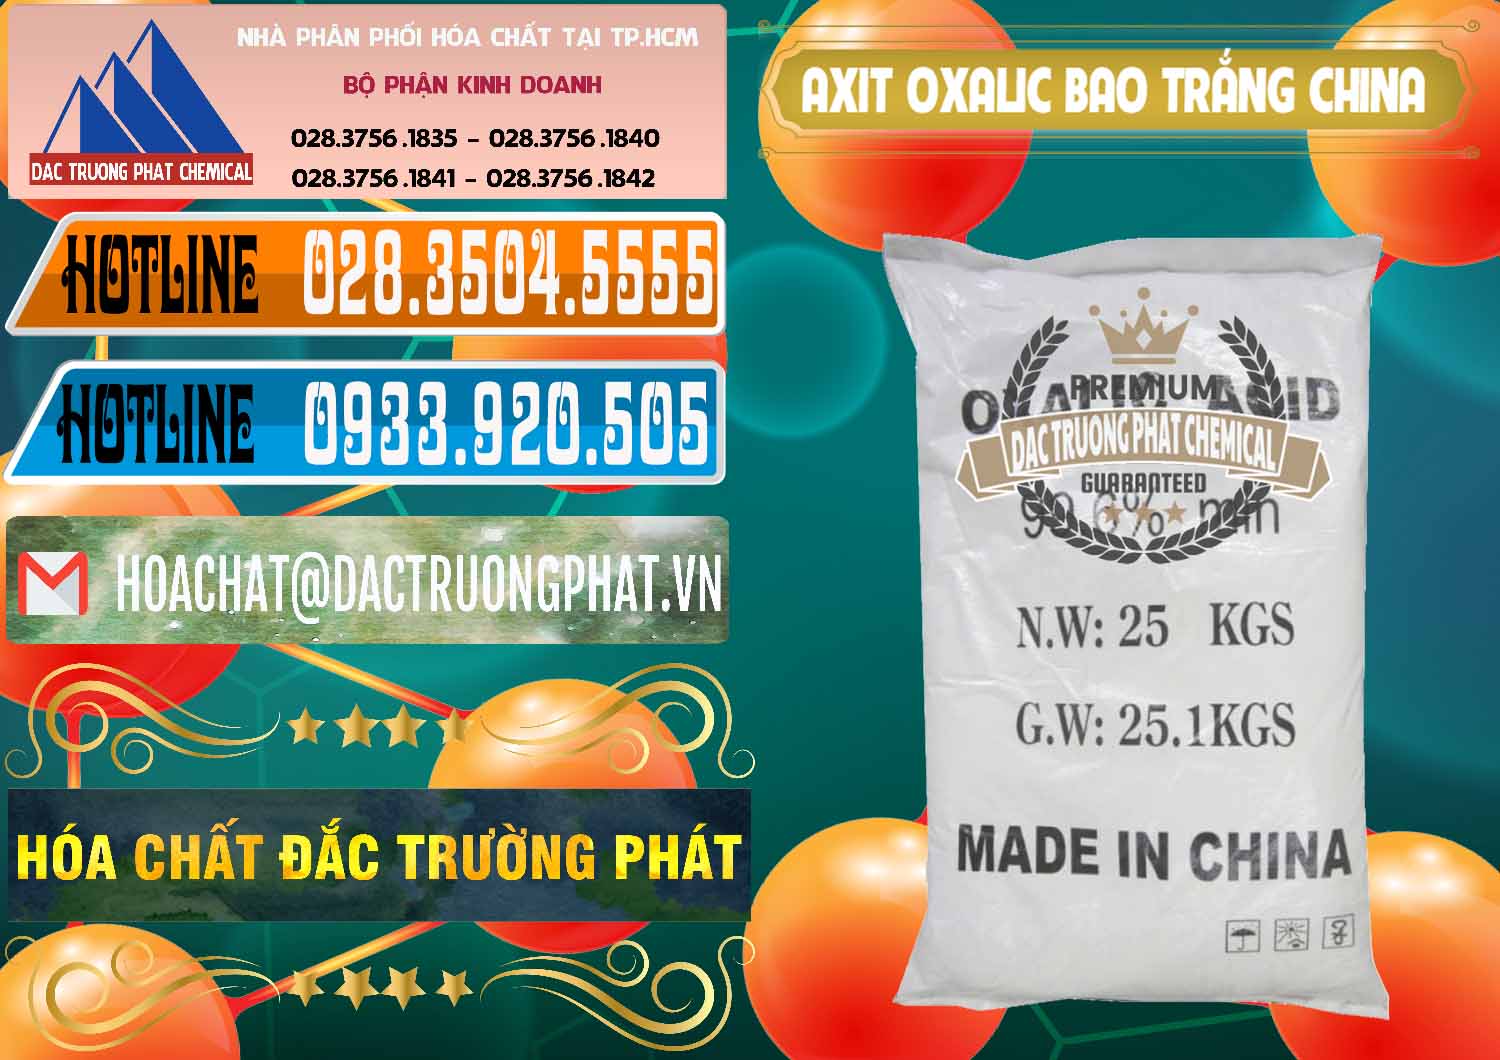 Nơi bán - cung ứng Acid Oxalic – Axit Oxalic 99.6% Bao Trắng Trung Quốc China - 0270 - Cty chuyên cung cấp ( bán ) hóa chất tại TP.HCM - stmp.net